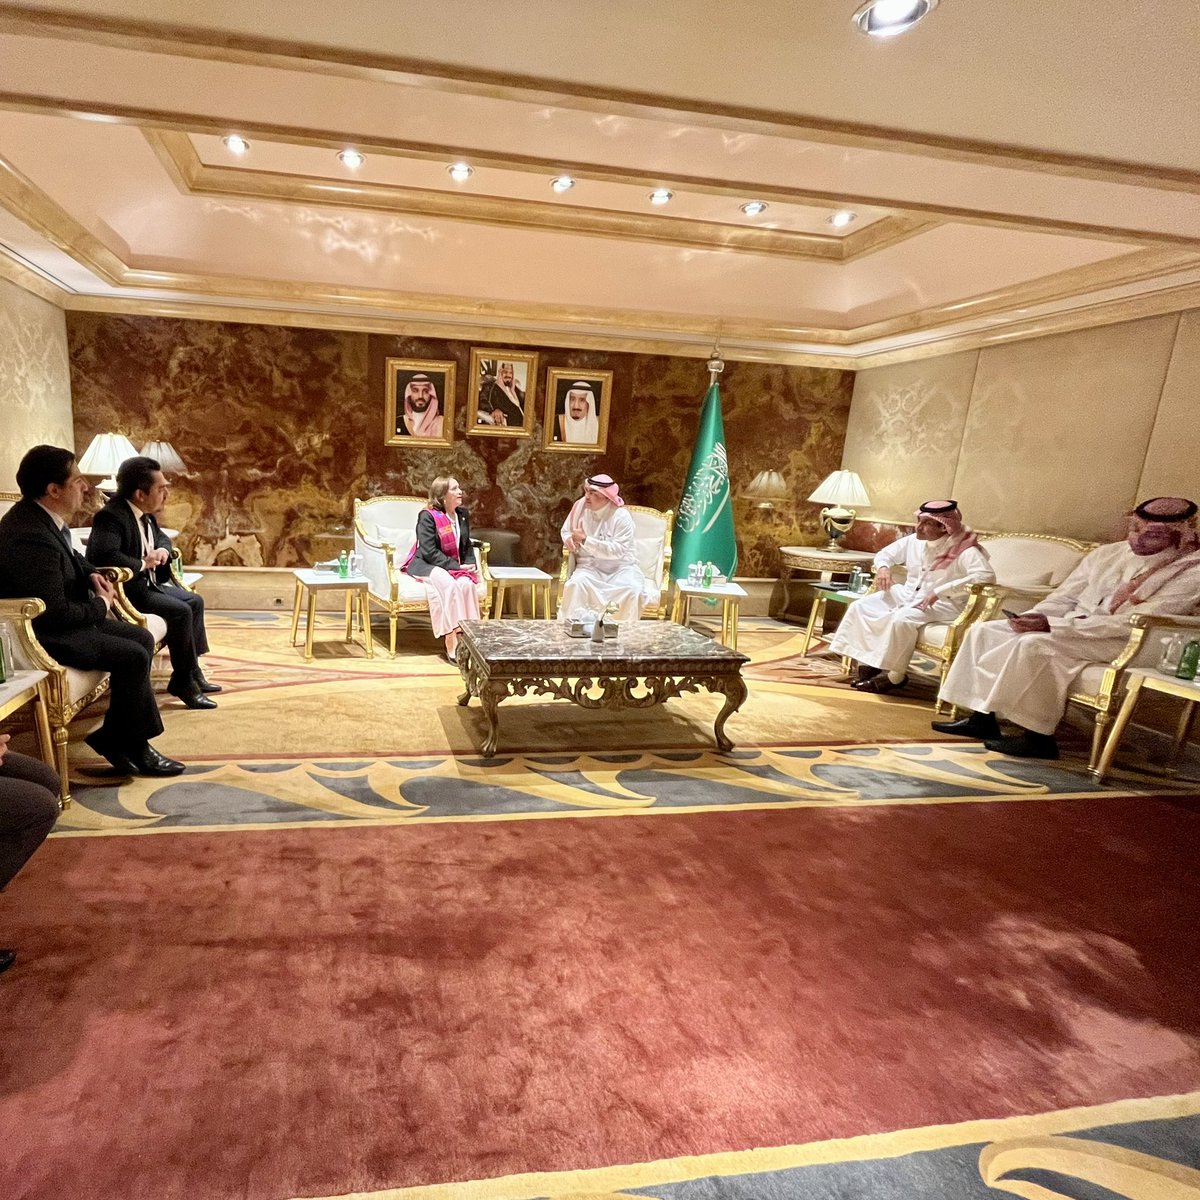 #GTinKSA | La #ViceCancillerGT se reunió con el Viceministro de Cultura de Arabia Saudita, con el objetivo de agradecer el apoyo otorgado en el proceso de admisión de Takalik Abaj como Patrimonio Mundial y compartir oportunidades de cooperación entre ambos países.